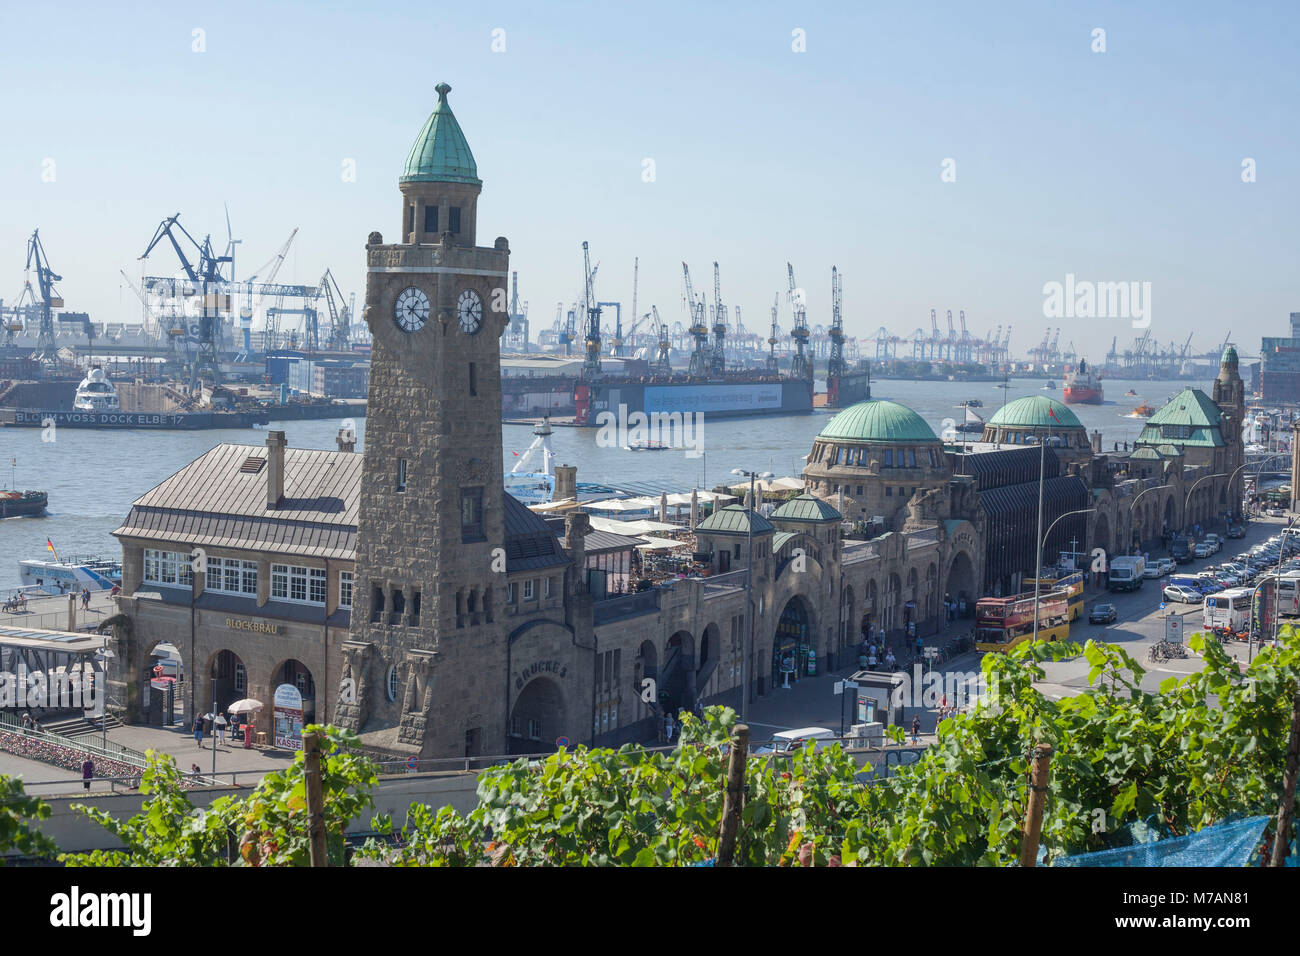 St. Pauli Piers, Hamburg, Germany, Europe Stock Photo